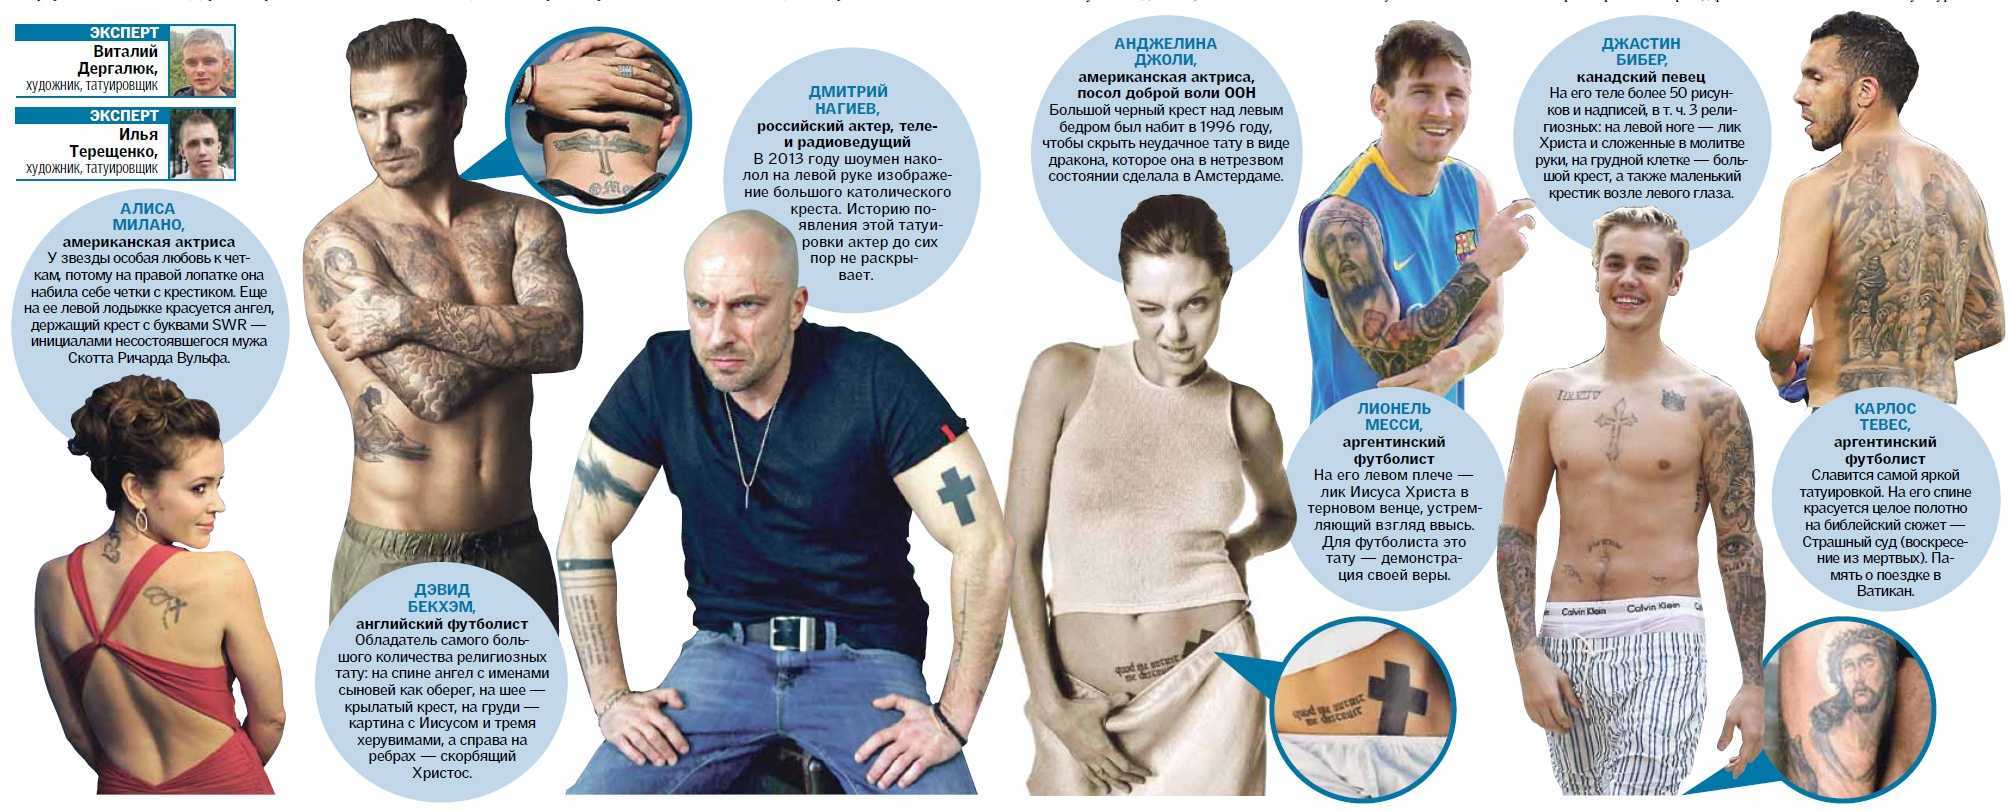 Интересные факты о татуировках